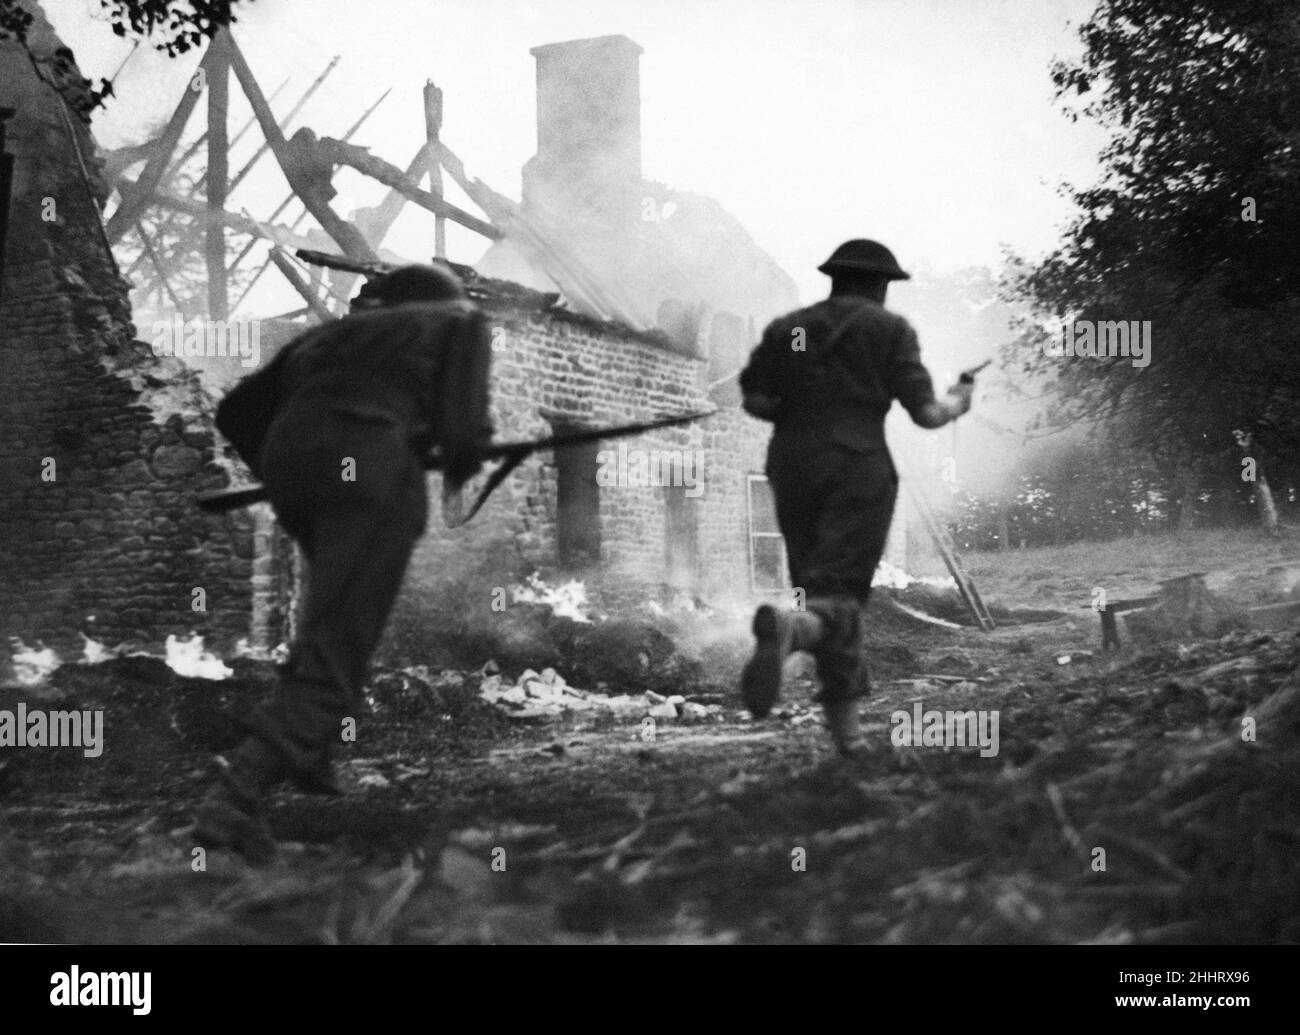 Der Vormarsch südlich von Le Beny Bocage geht weiter. Britische Infanterie ist hier zu sehen, wie sie an den brennenden Resten eines Bauernhauses vorbeirast, um dem Feind zu folgen. Die Deutschen hatten die Gebäude als Quartier genutzt. August 1944 Stockfoto